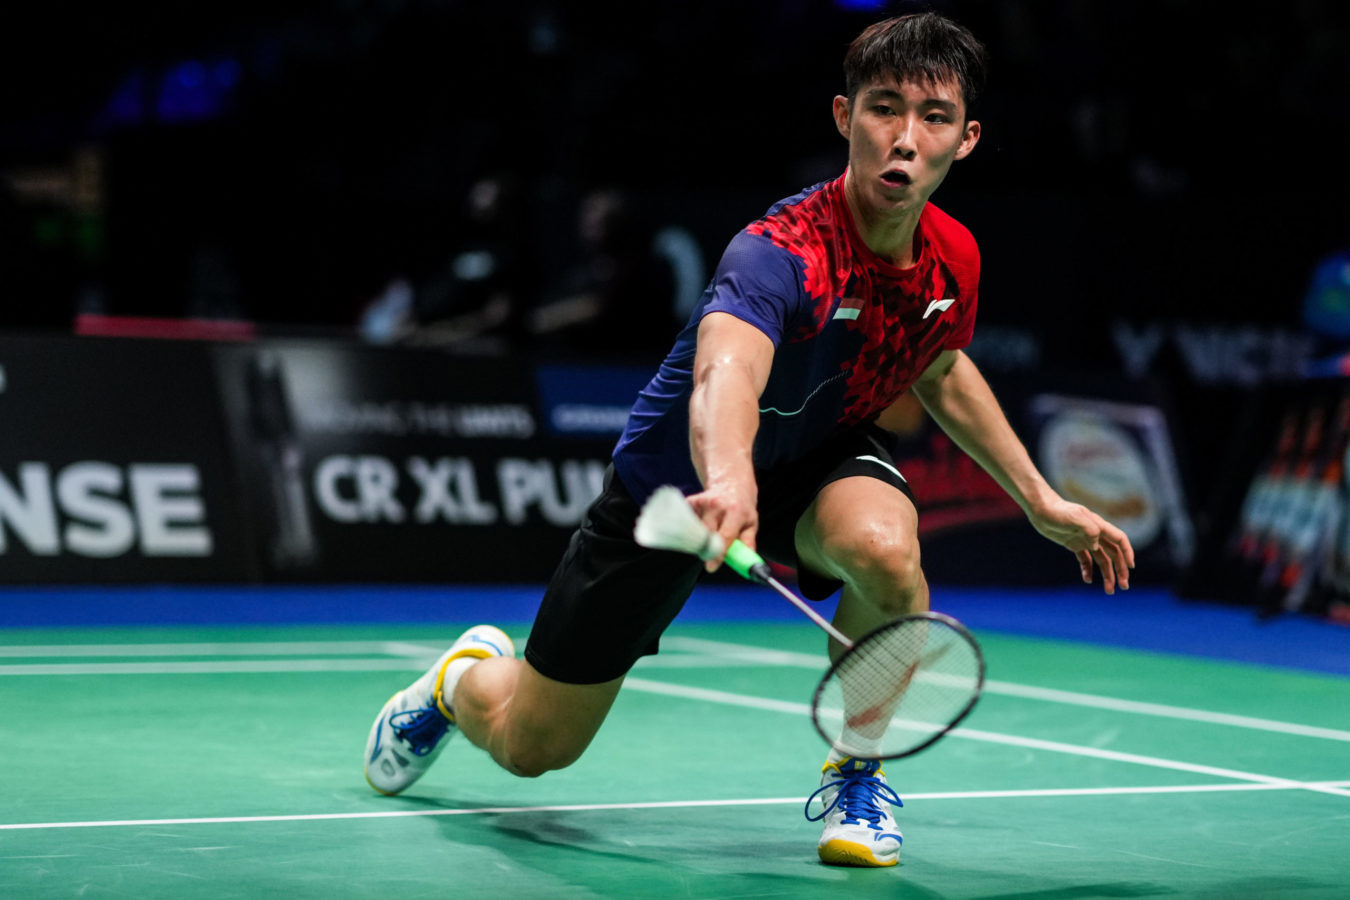 Penang-born Singaporean Loh Kean Yew crowned badminton world champion